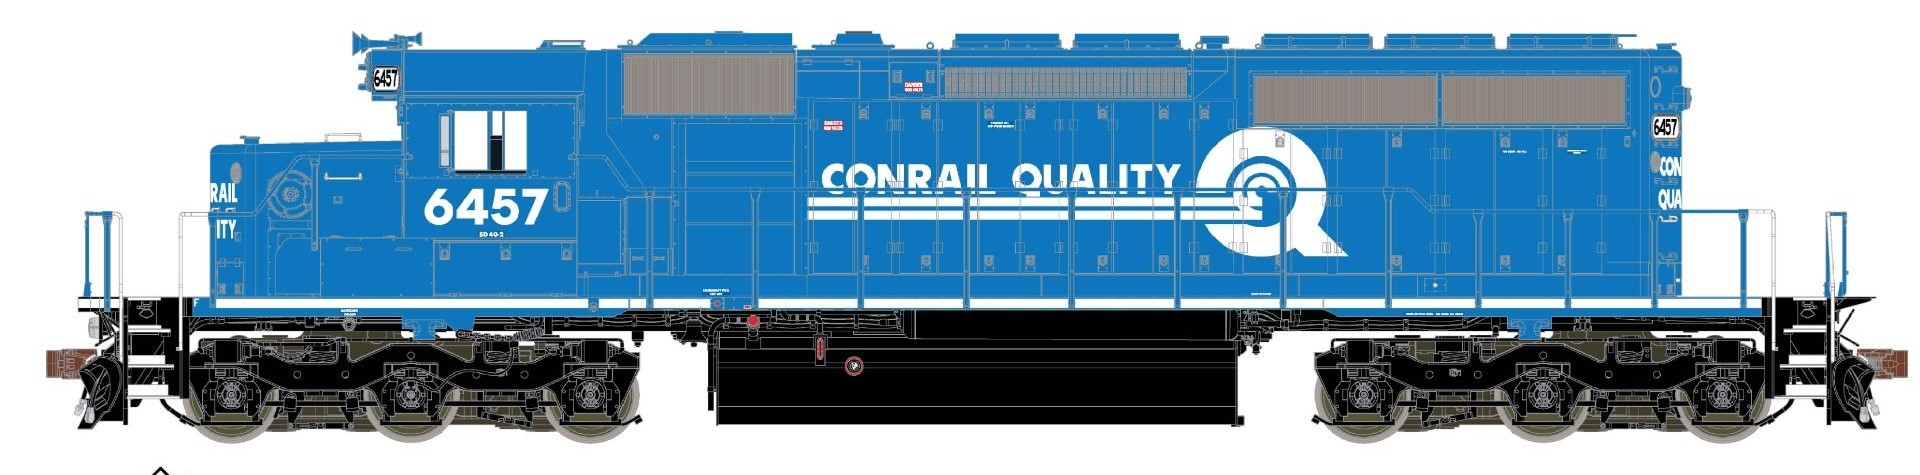 ScaleTrains Rivet Counter HO SXT38791 DCC/ESU Loksound 5 Equipped EMD SD40-2 Locomotive w/Ditch Lights Conrail Small 'Quality' Logo CR #6442